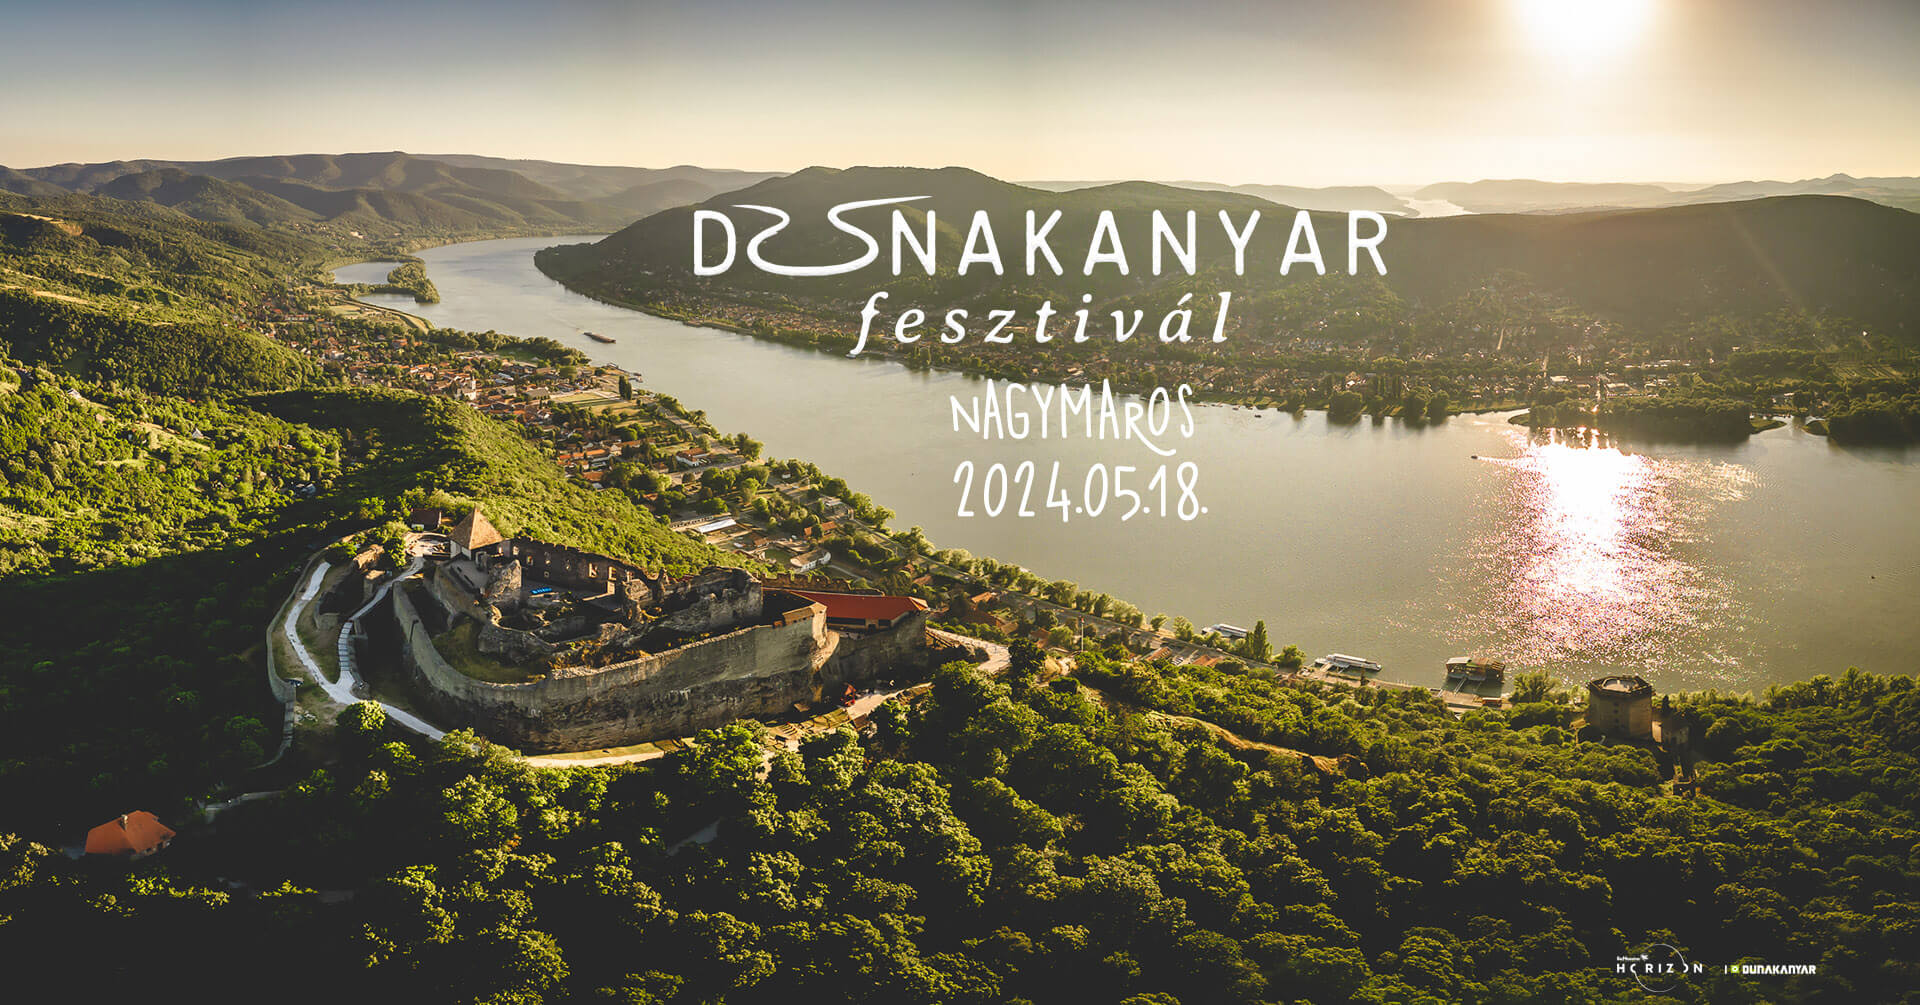 Dunakanyar Festival, Nagymaros, 18 May